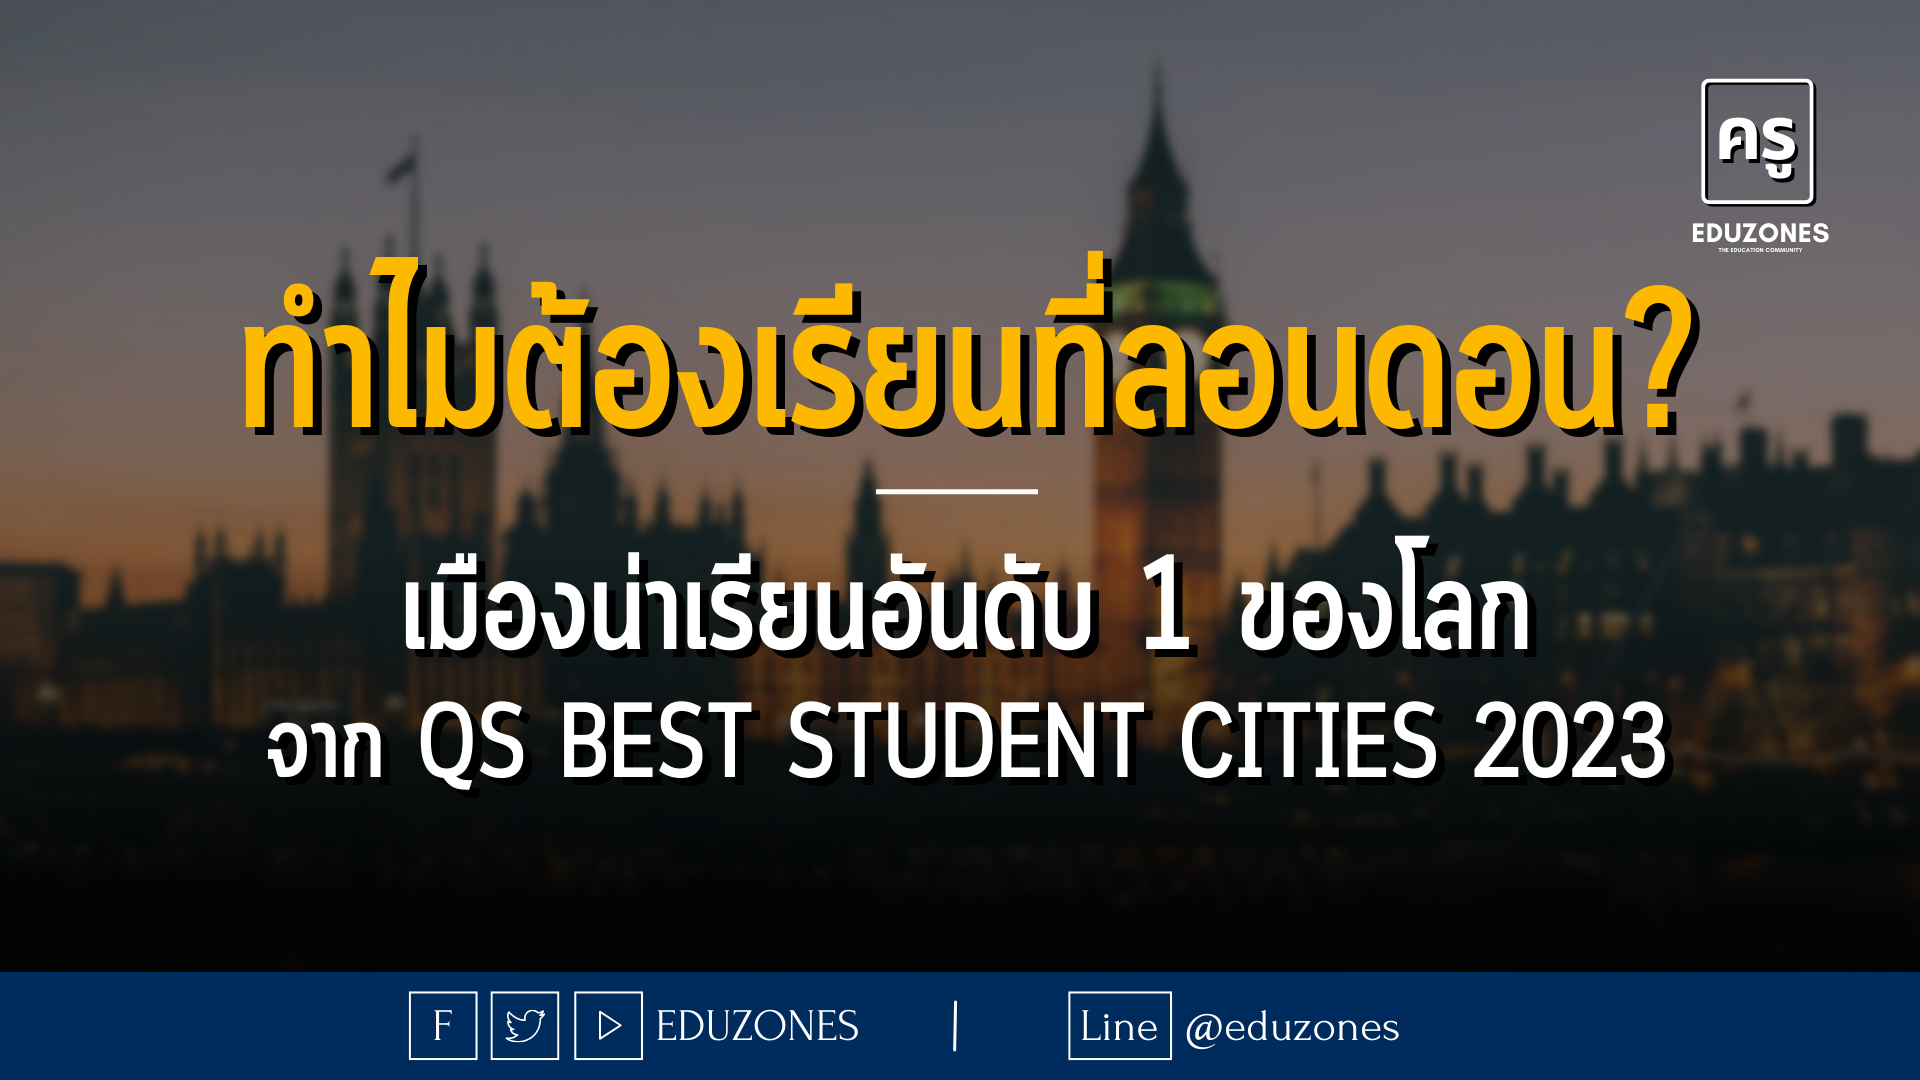 ทำไมต้องเรียนที่ลอนดอน? - เมืองน่าเรียนอันดับ 1 ของโลกจาก QS Best Student Cities 2023